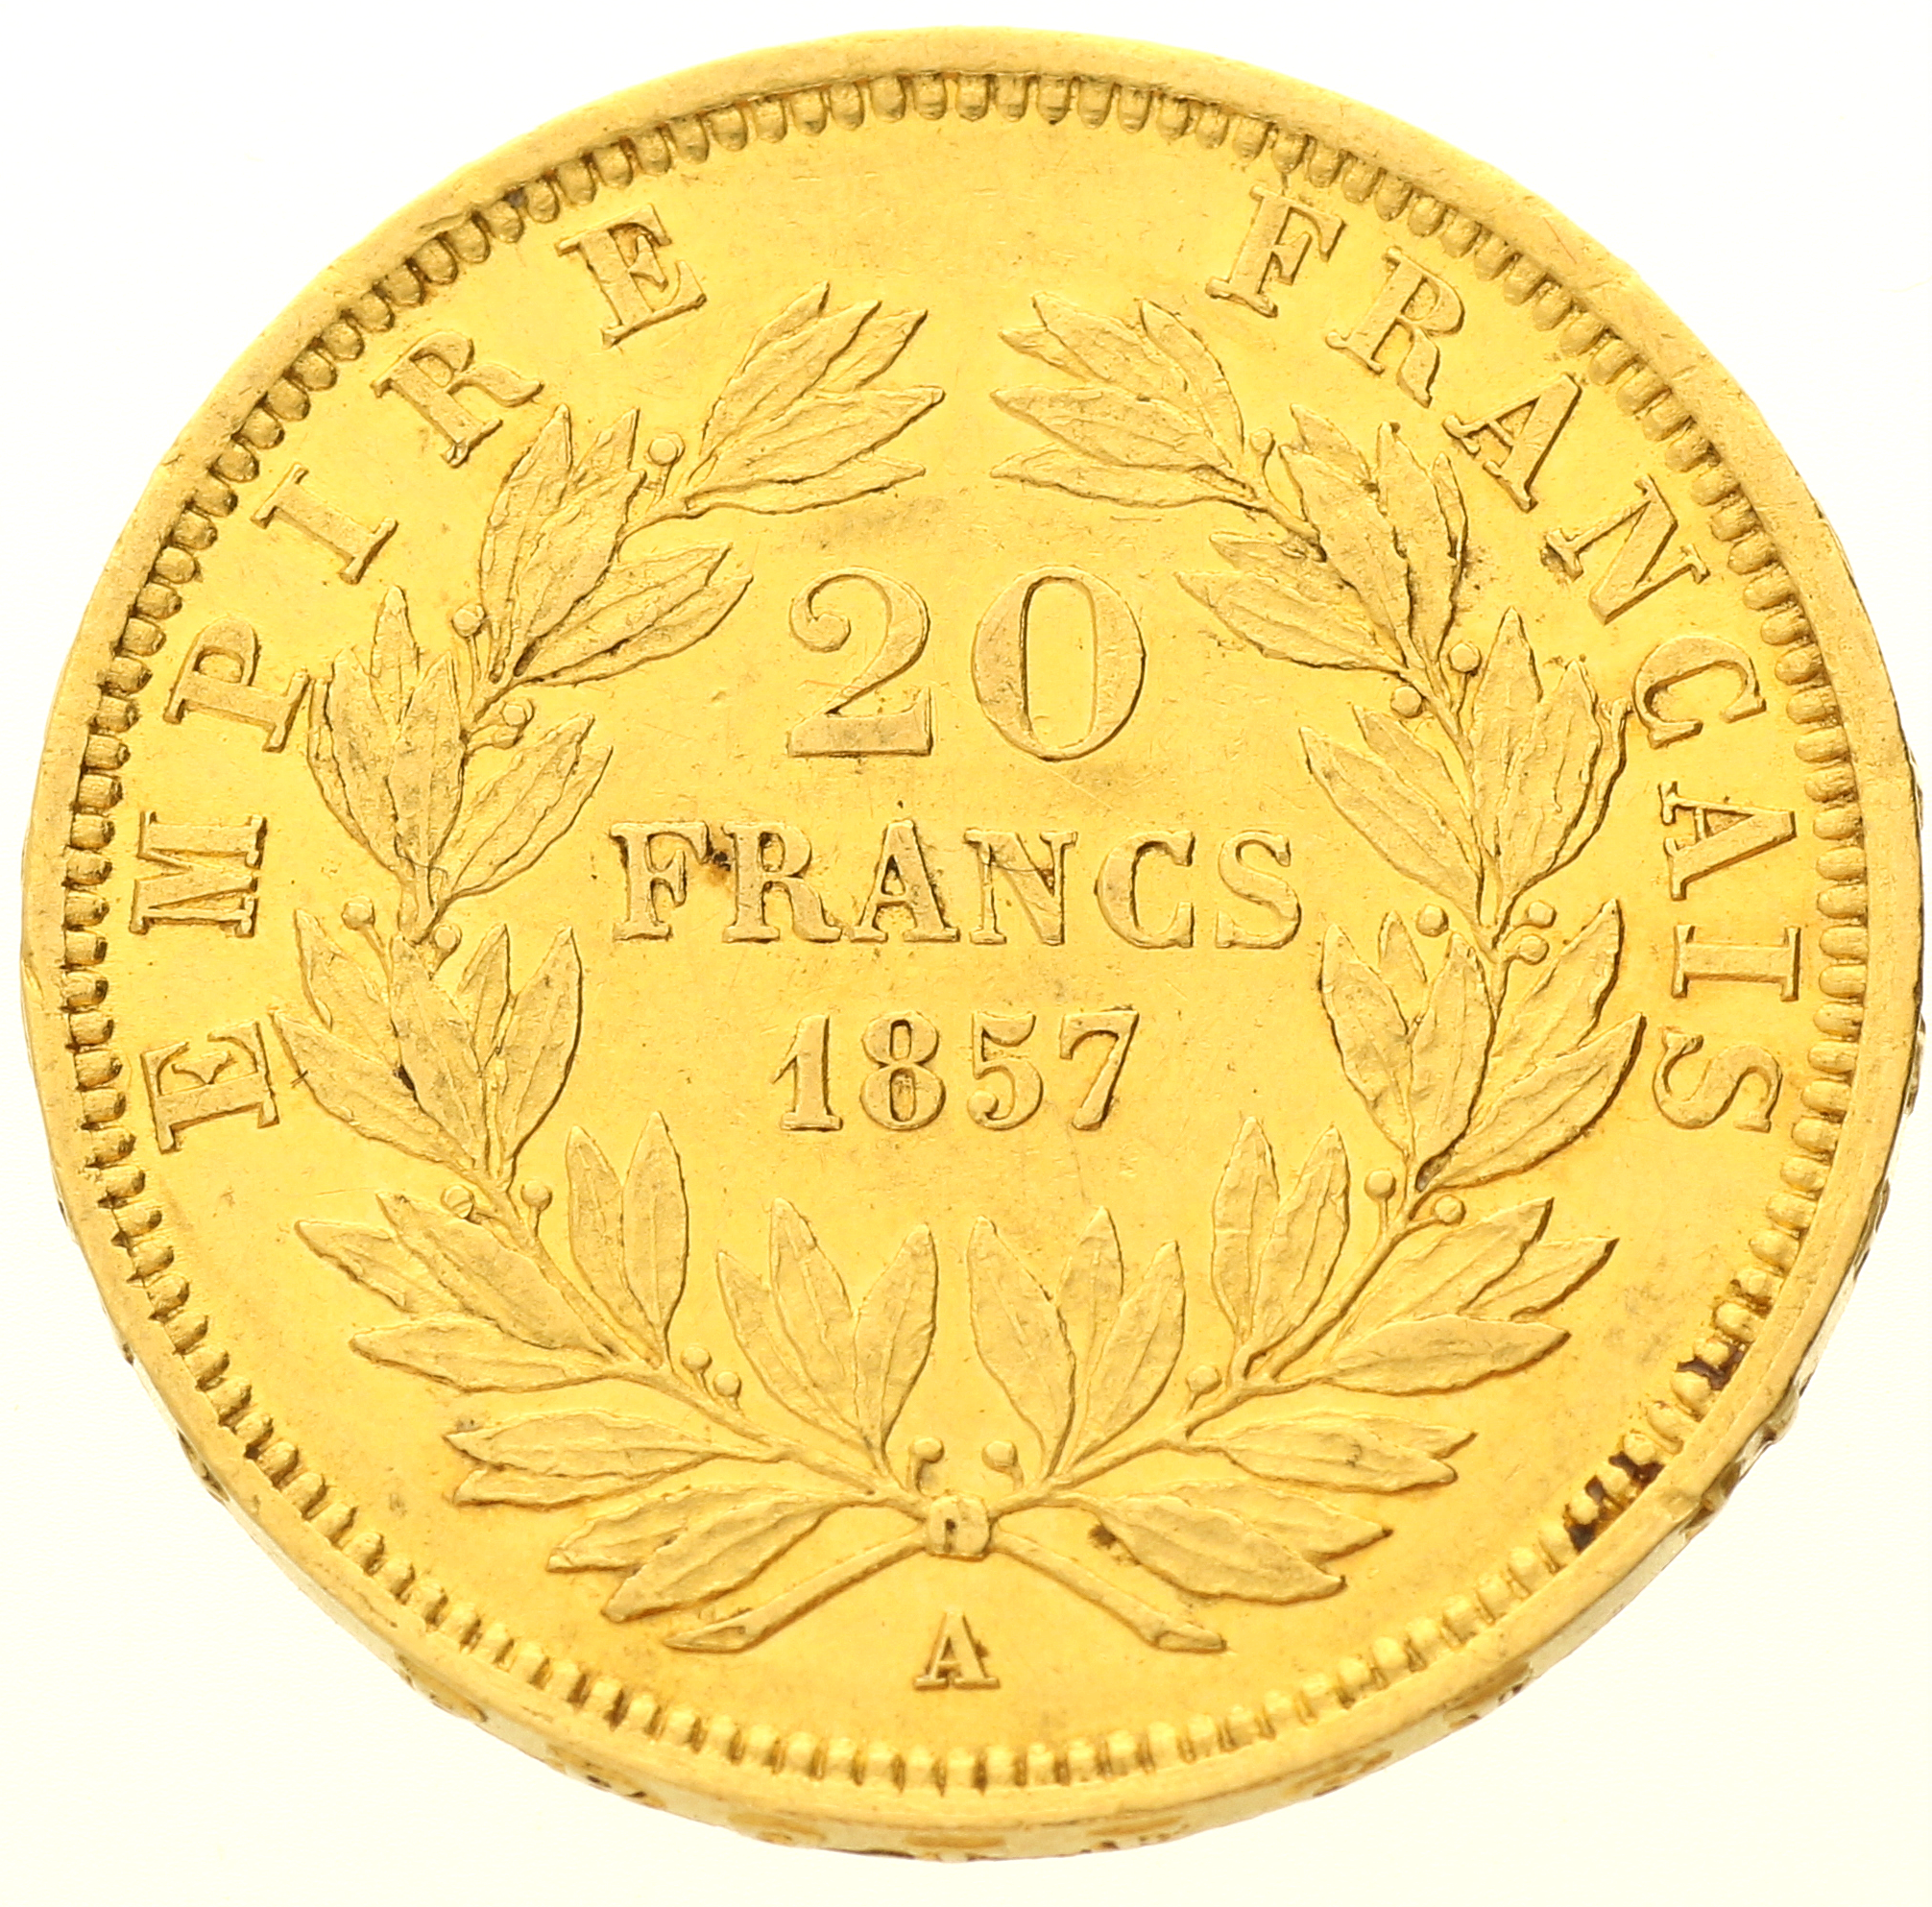 France - 20 francs - 1857 - A - Napoleon III